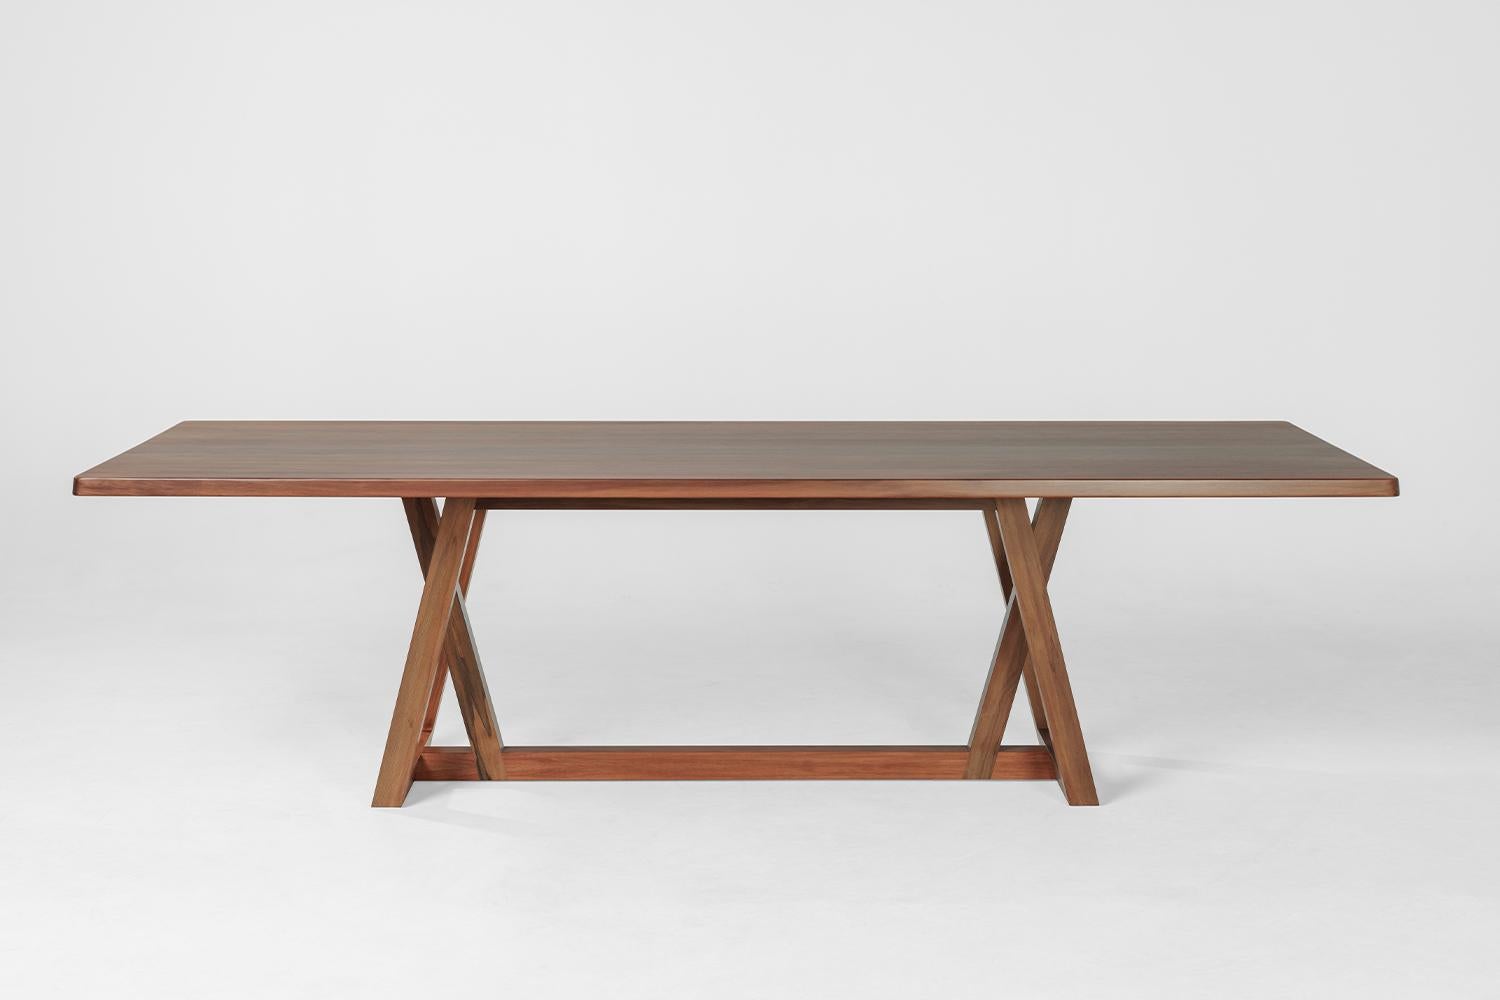 Expression subtile de la beauté naturelle et de l'artisanat, la table Umber a été créée en prenant une forme trapézoïdale et en établissant des juxtapositions avec les éléments de la base et du plateau.

La table Umber est fabriquée à partir de